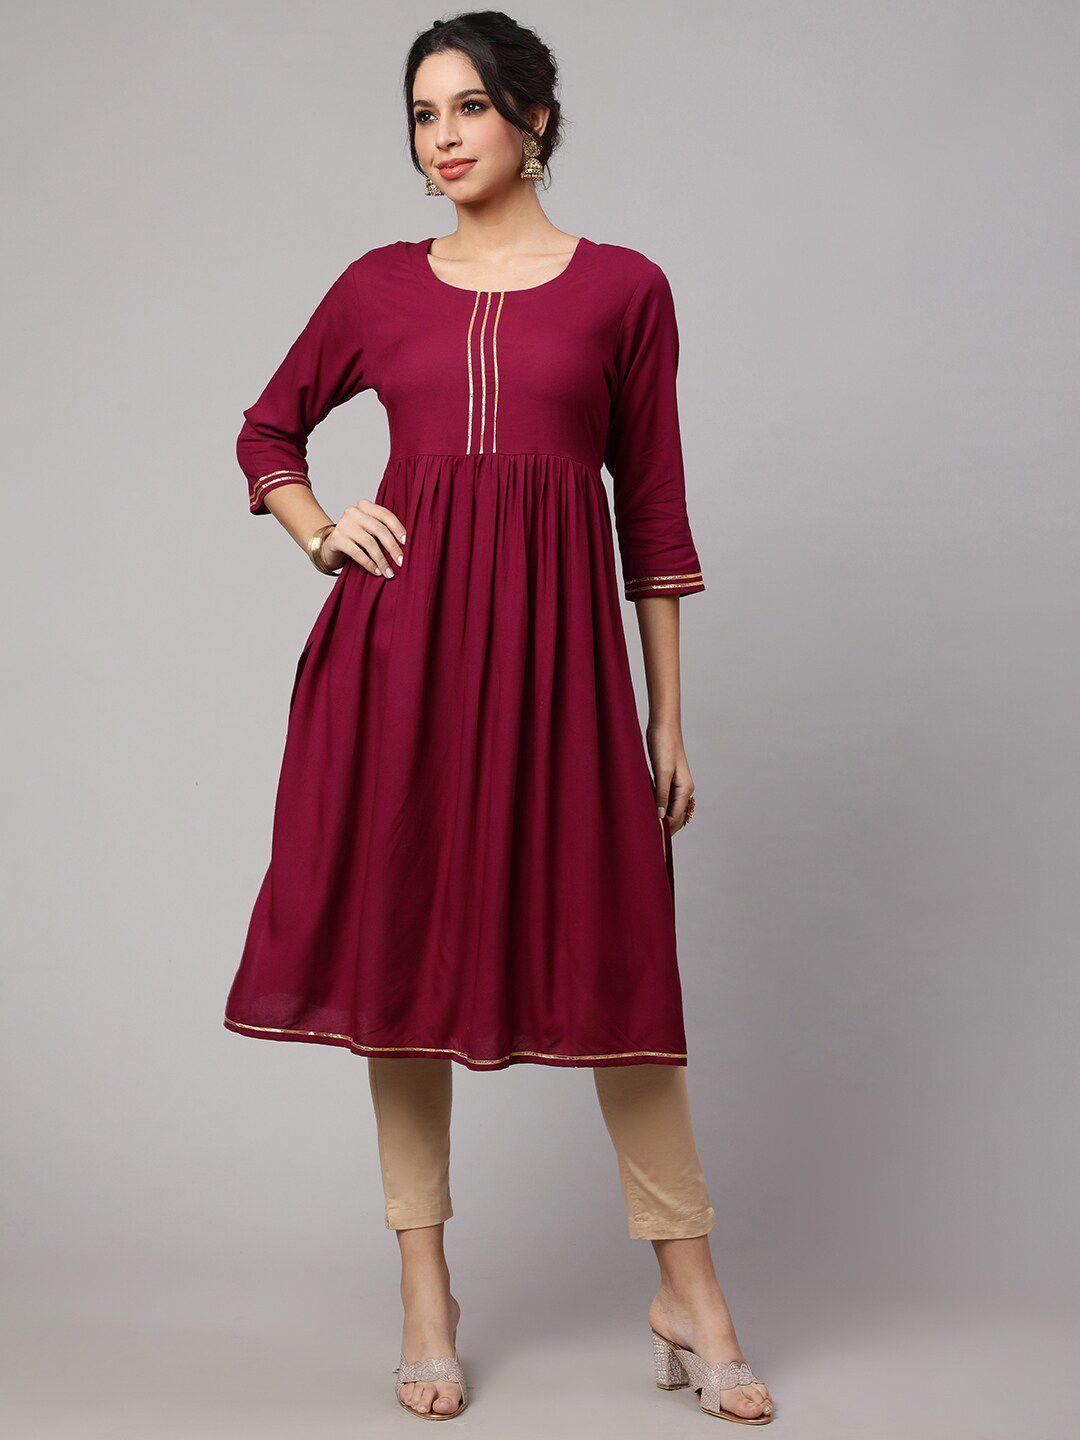 kalini maroon fit & flare dress